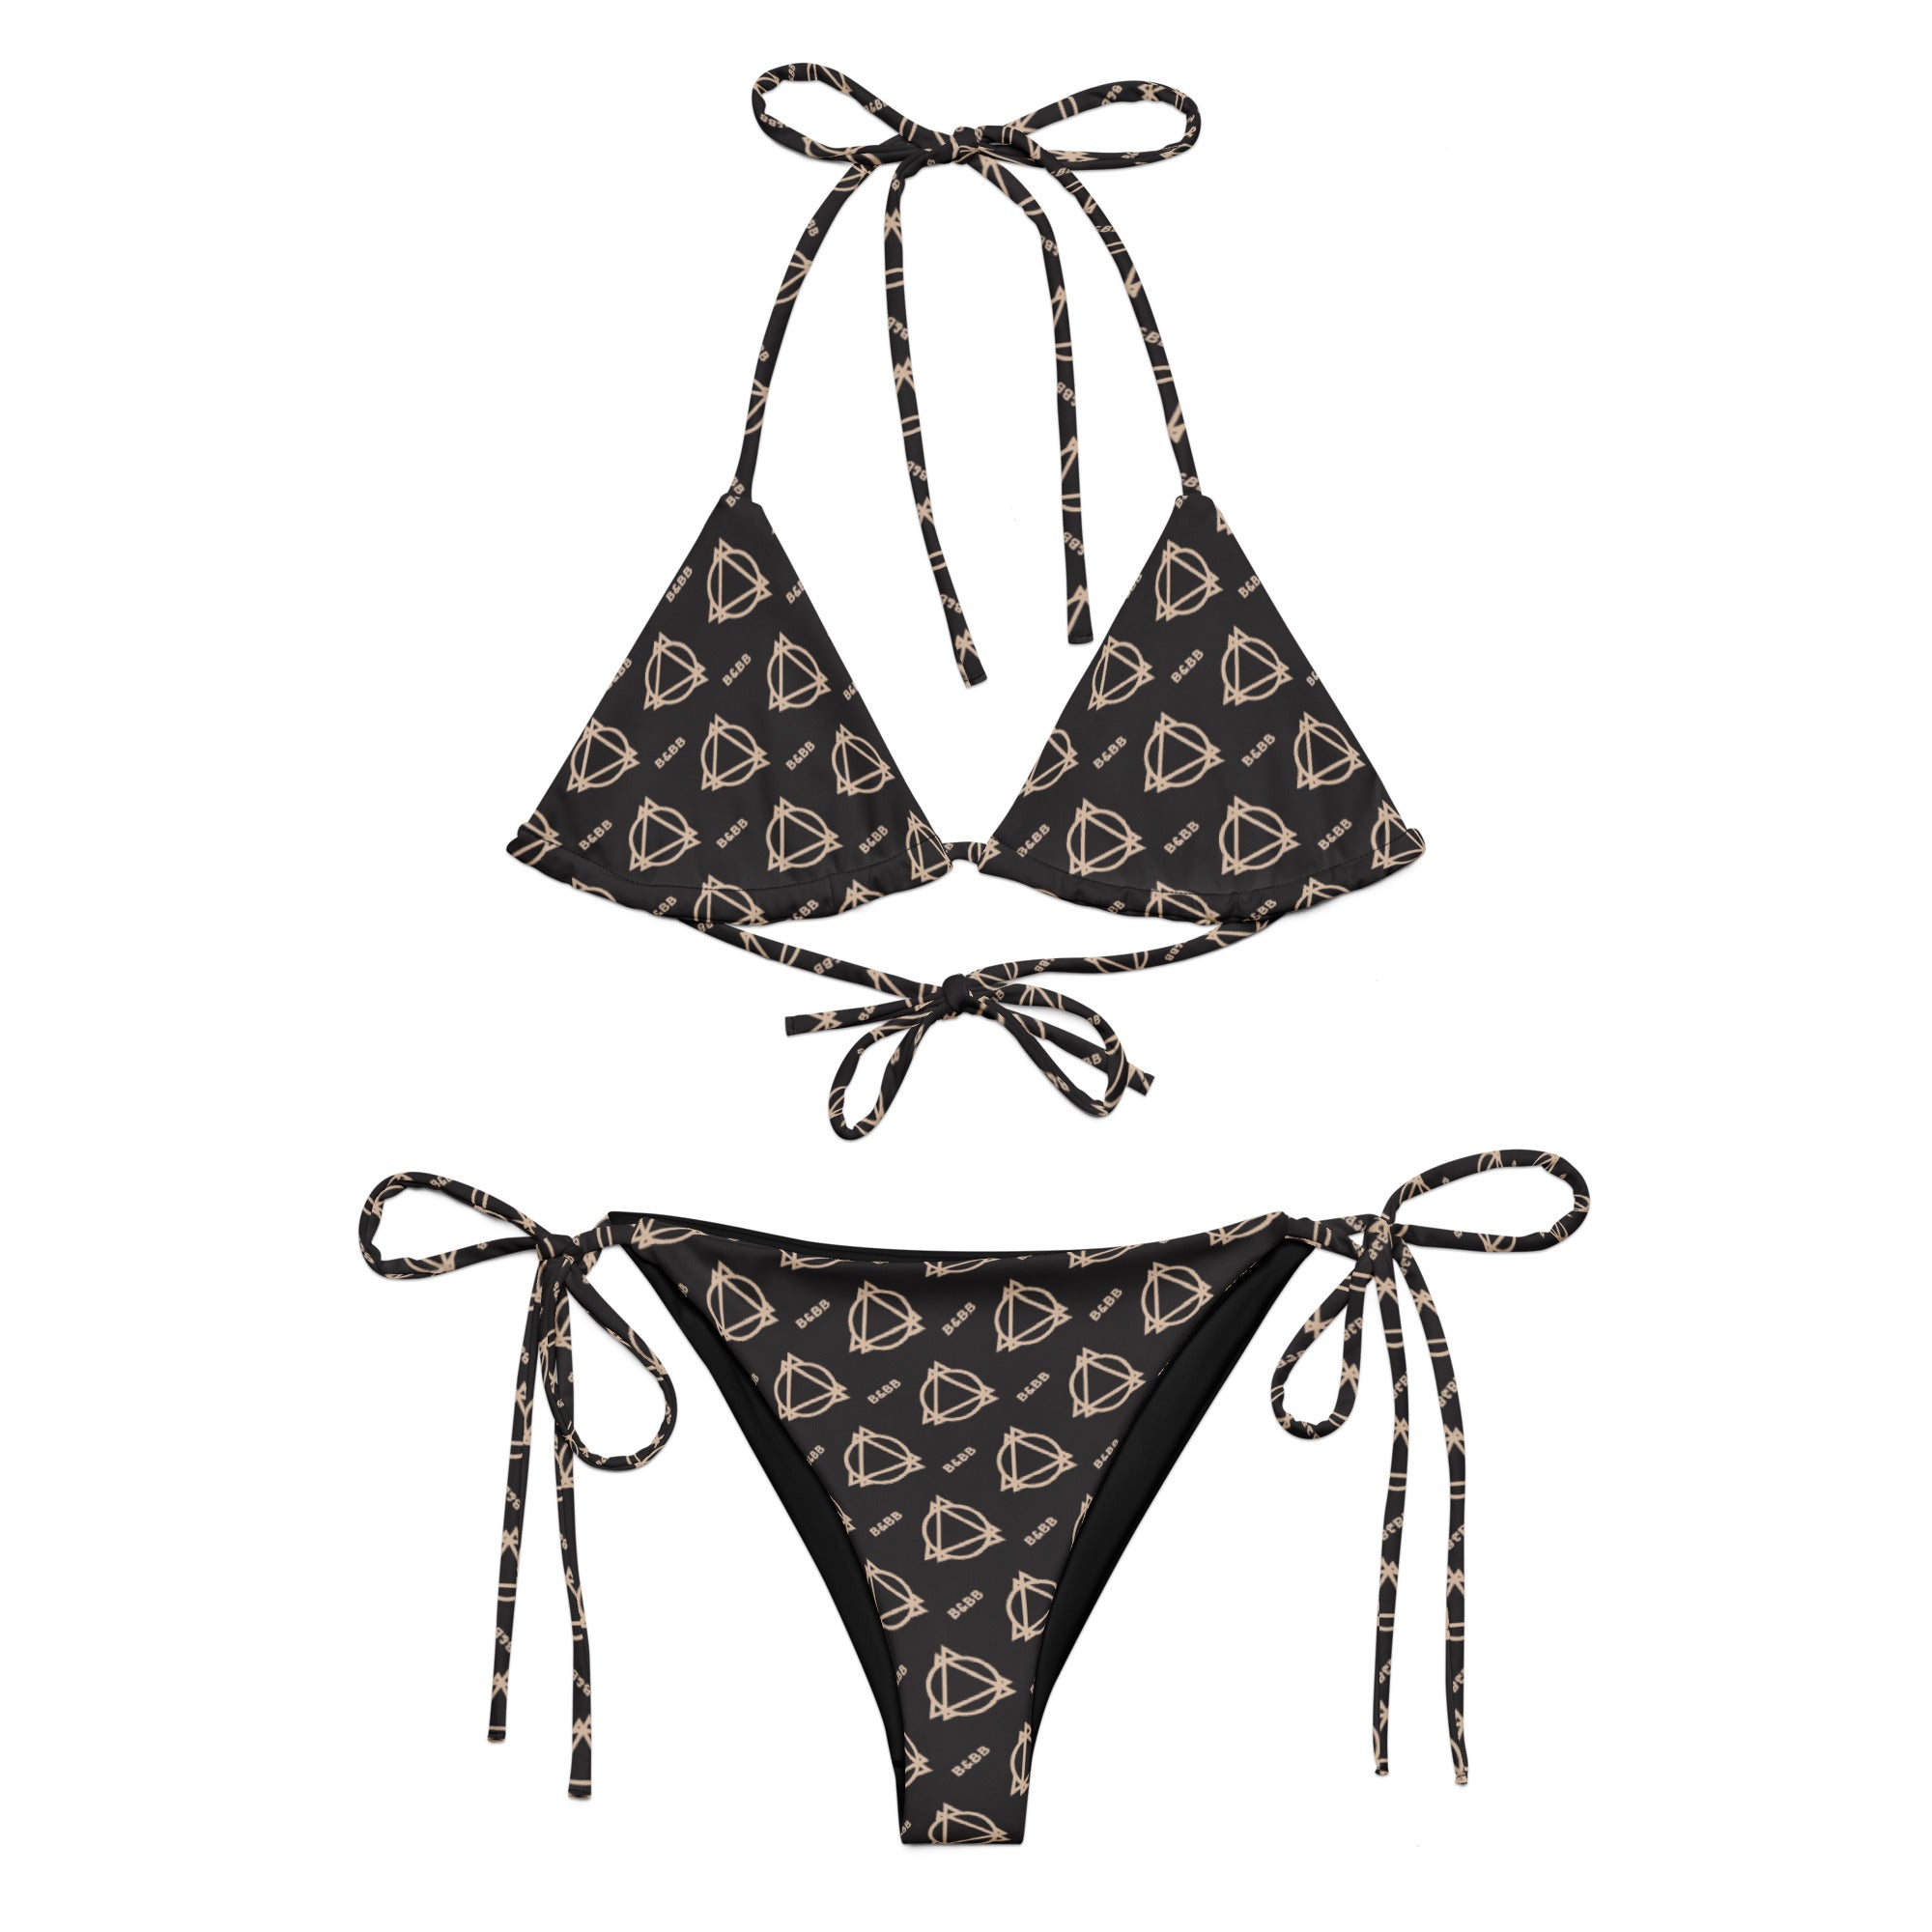 Boujee print black string bikini